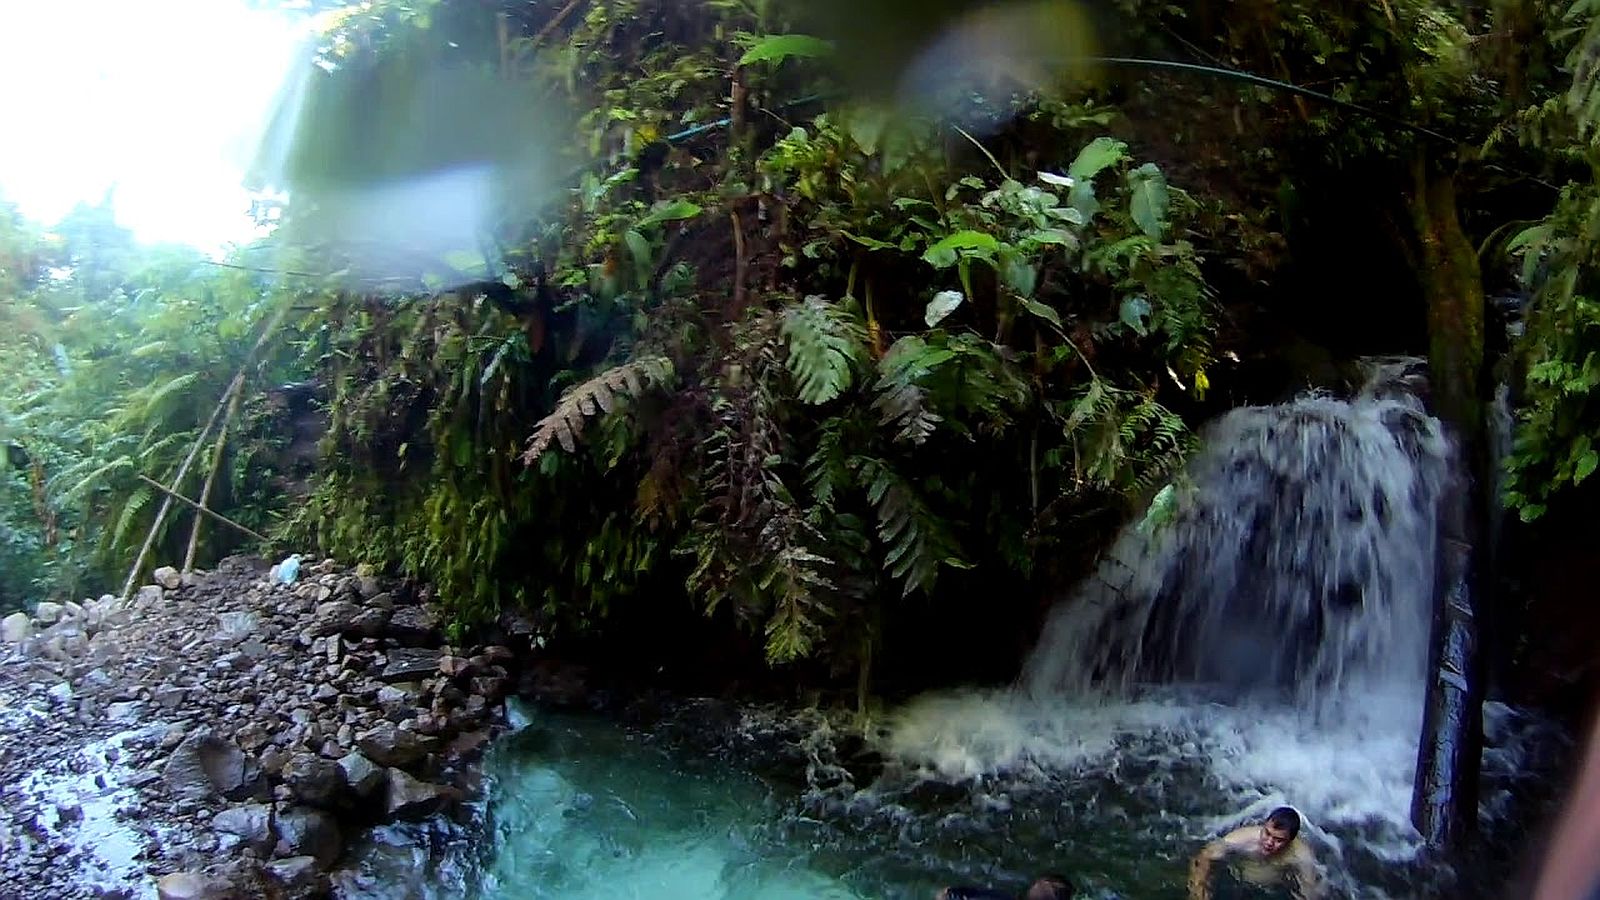 PHILIPPINEN REISEN - WASSERFÄLLE - Tres Agus Falls in Ormoc, Leyte